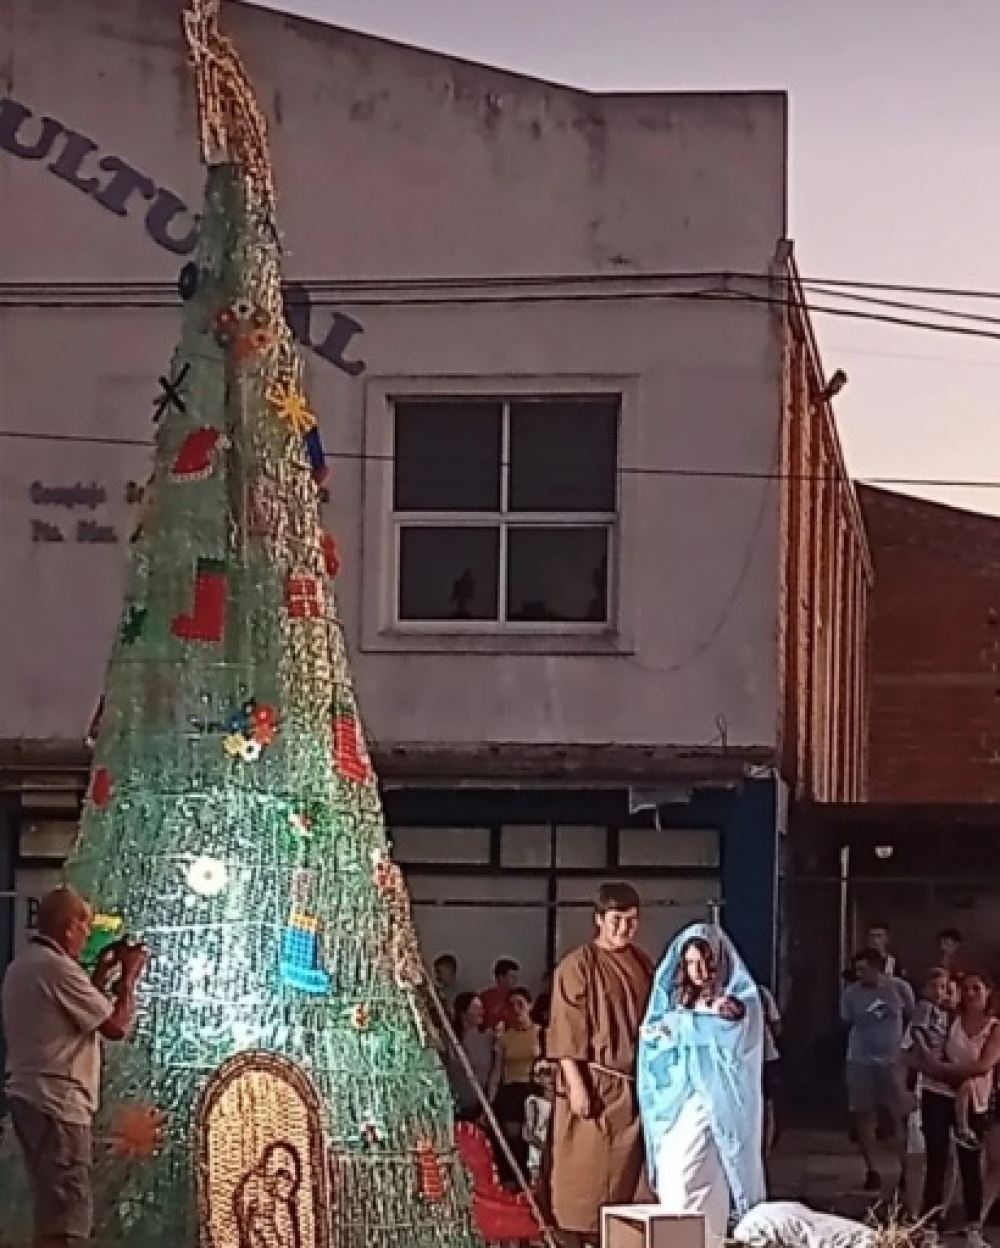 Los emprendedores y la Asociación de Turismo Comunitario de Santa María hacen brillar el árbol navideño de la comunidad
